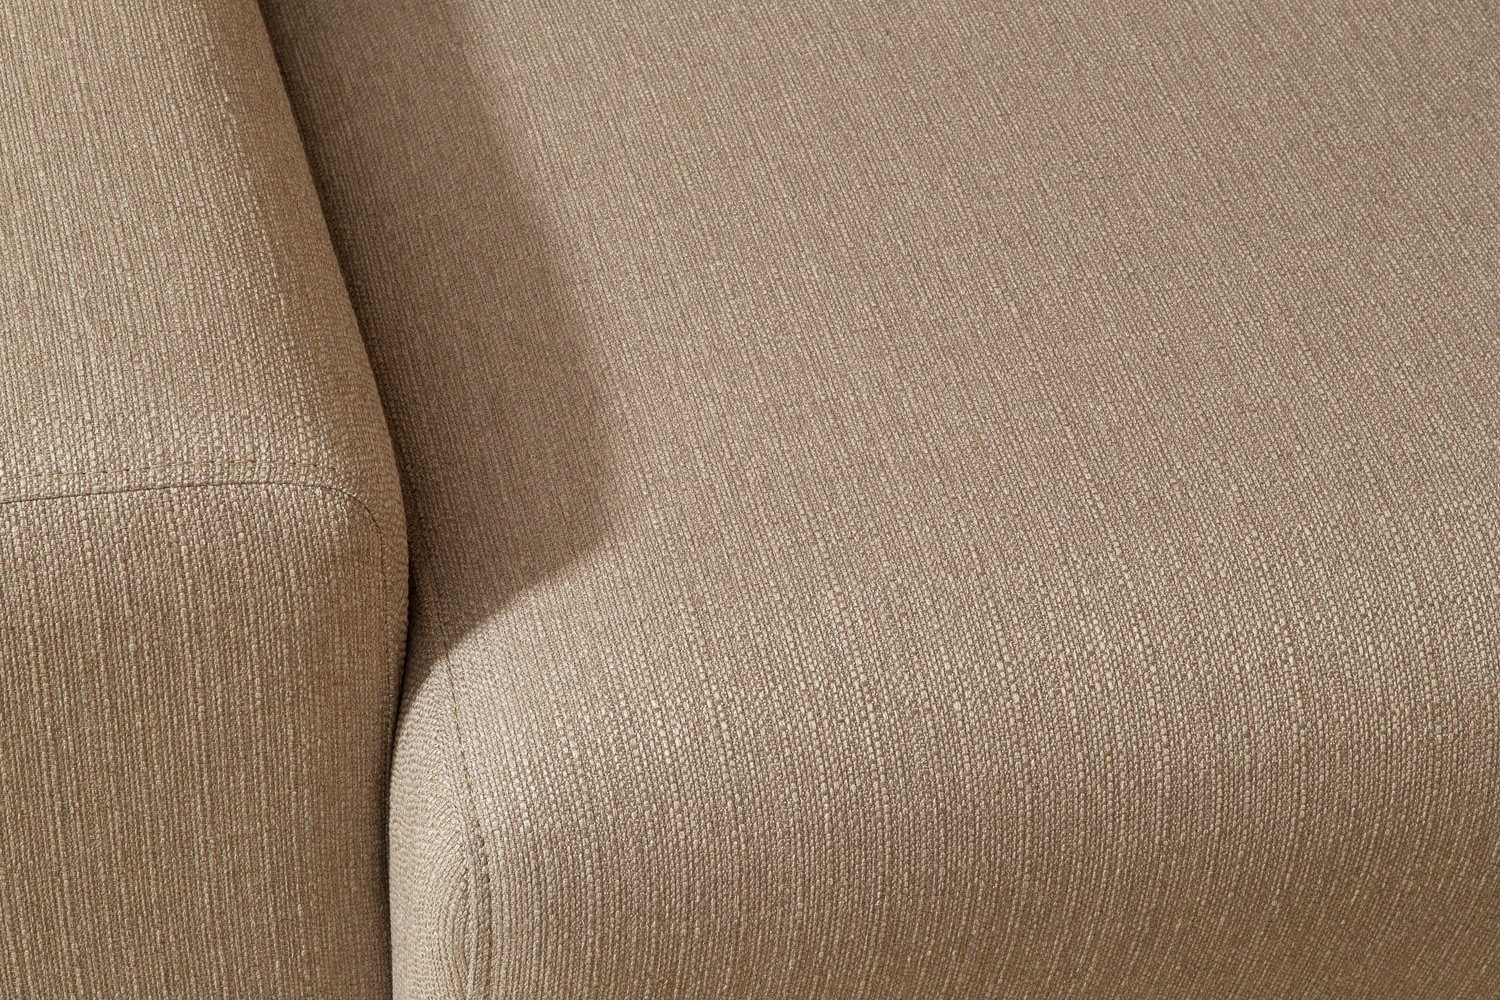 Надежная ткань для дивана